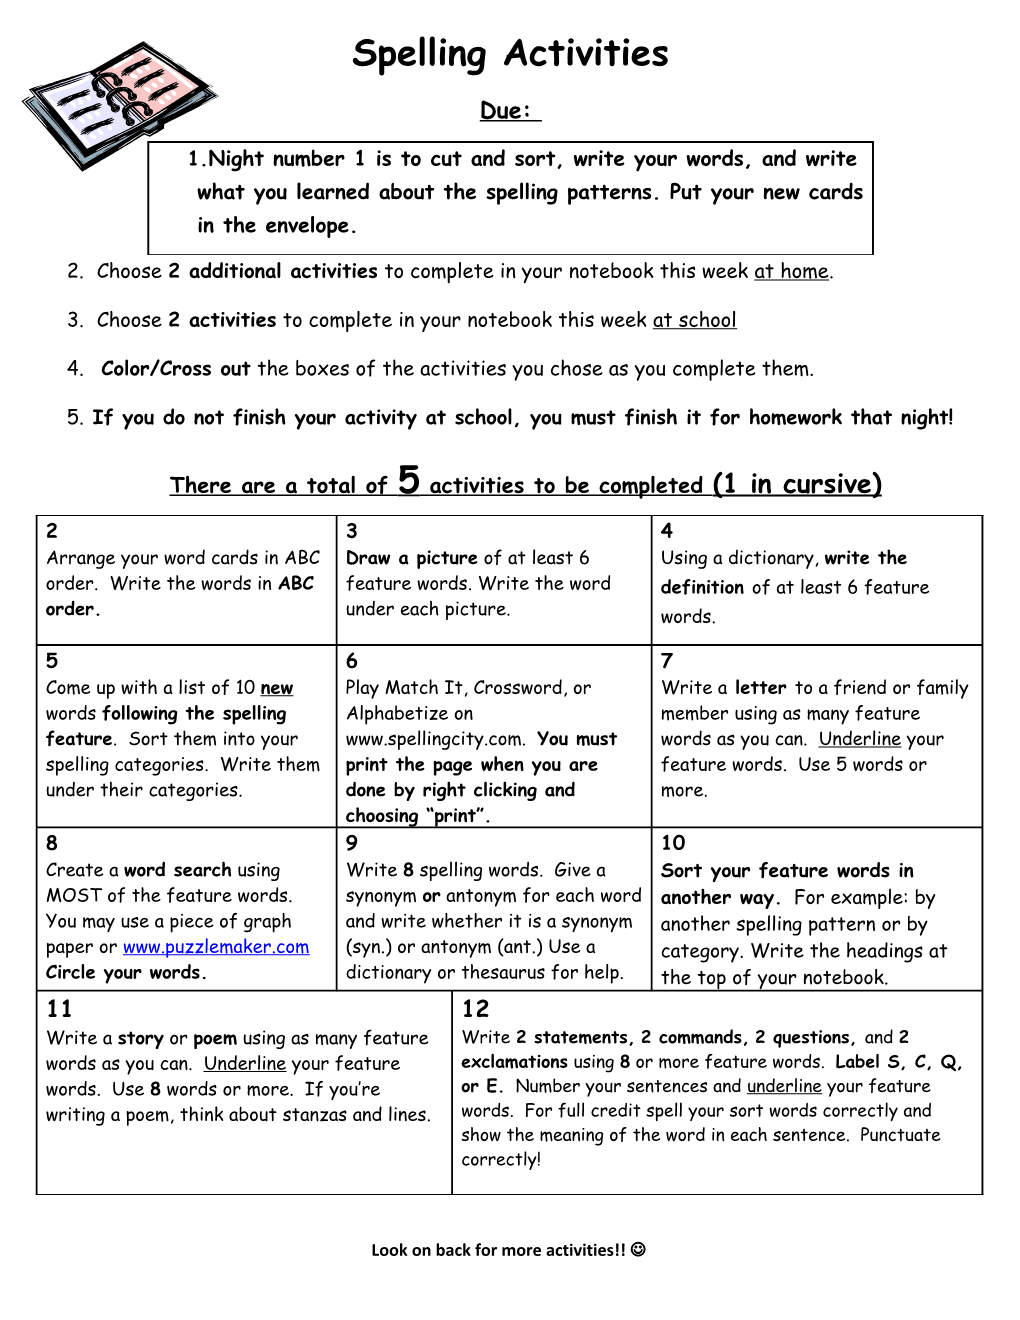 Spelling Activities s1